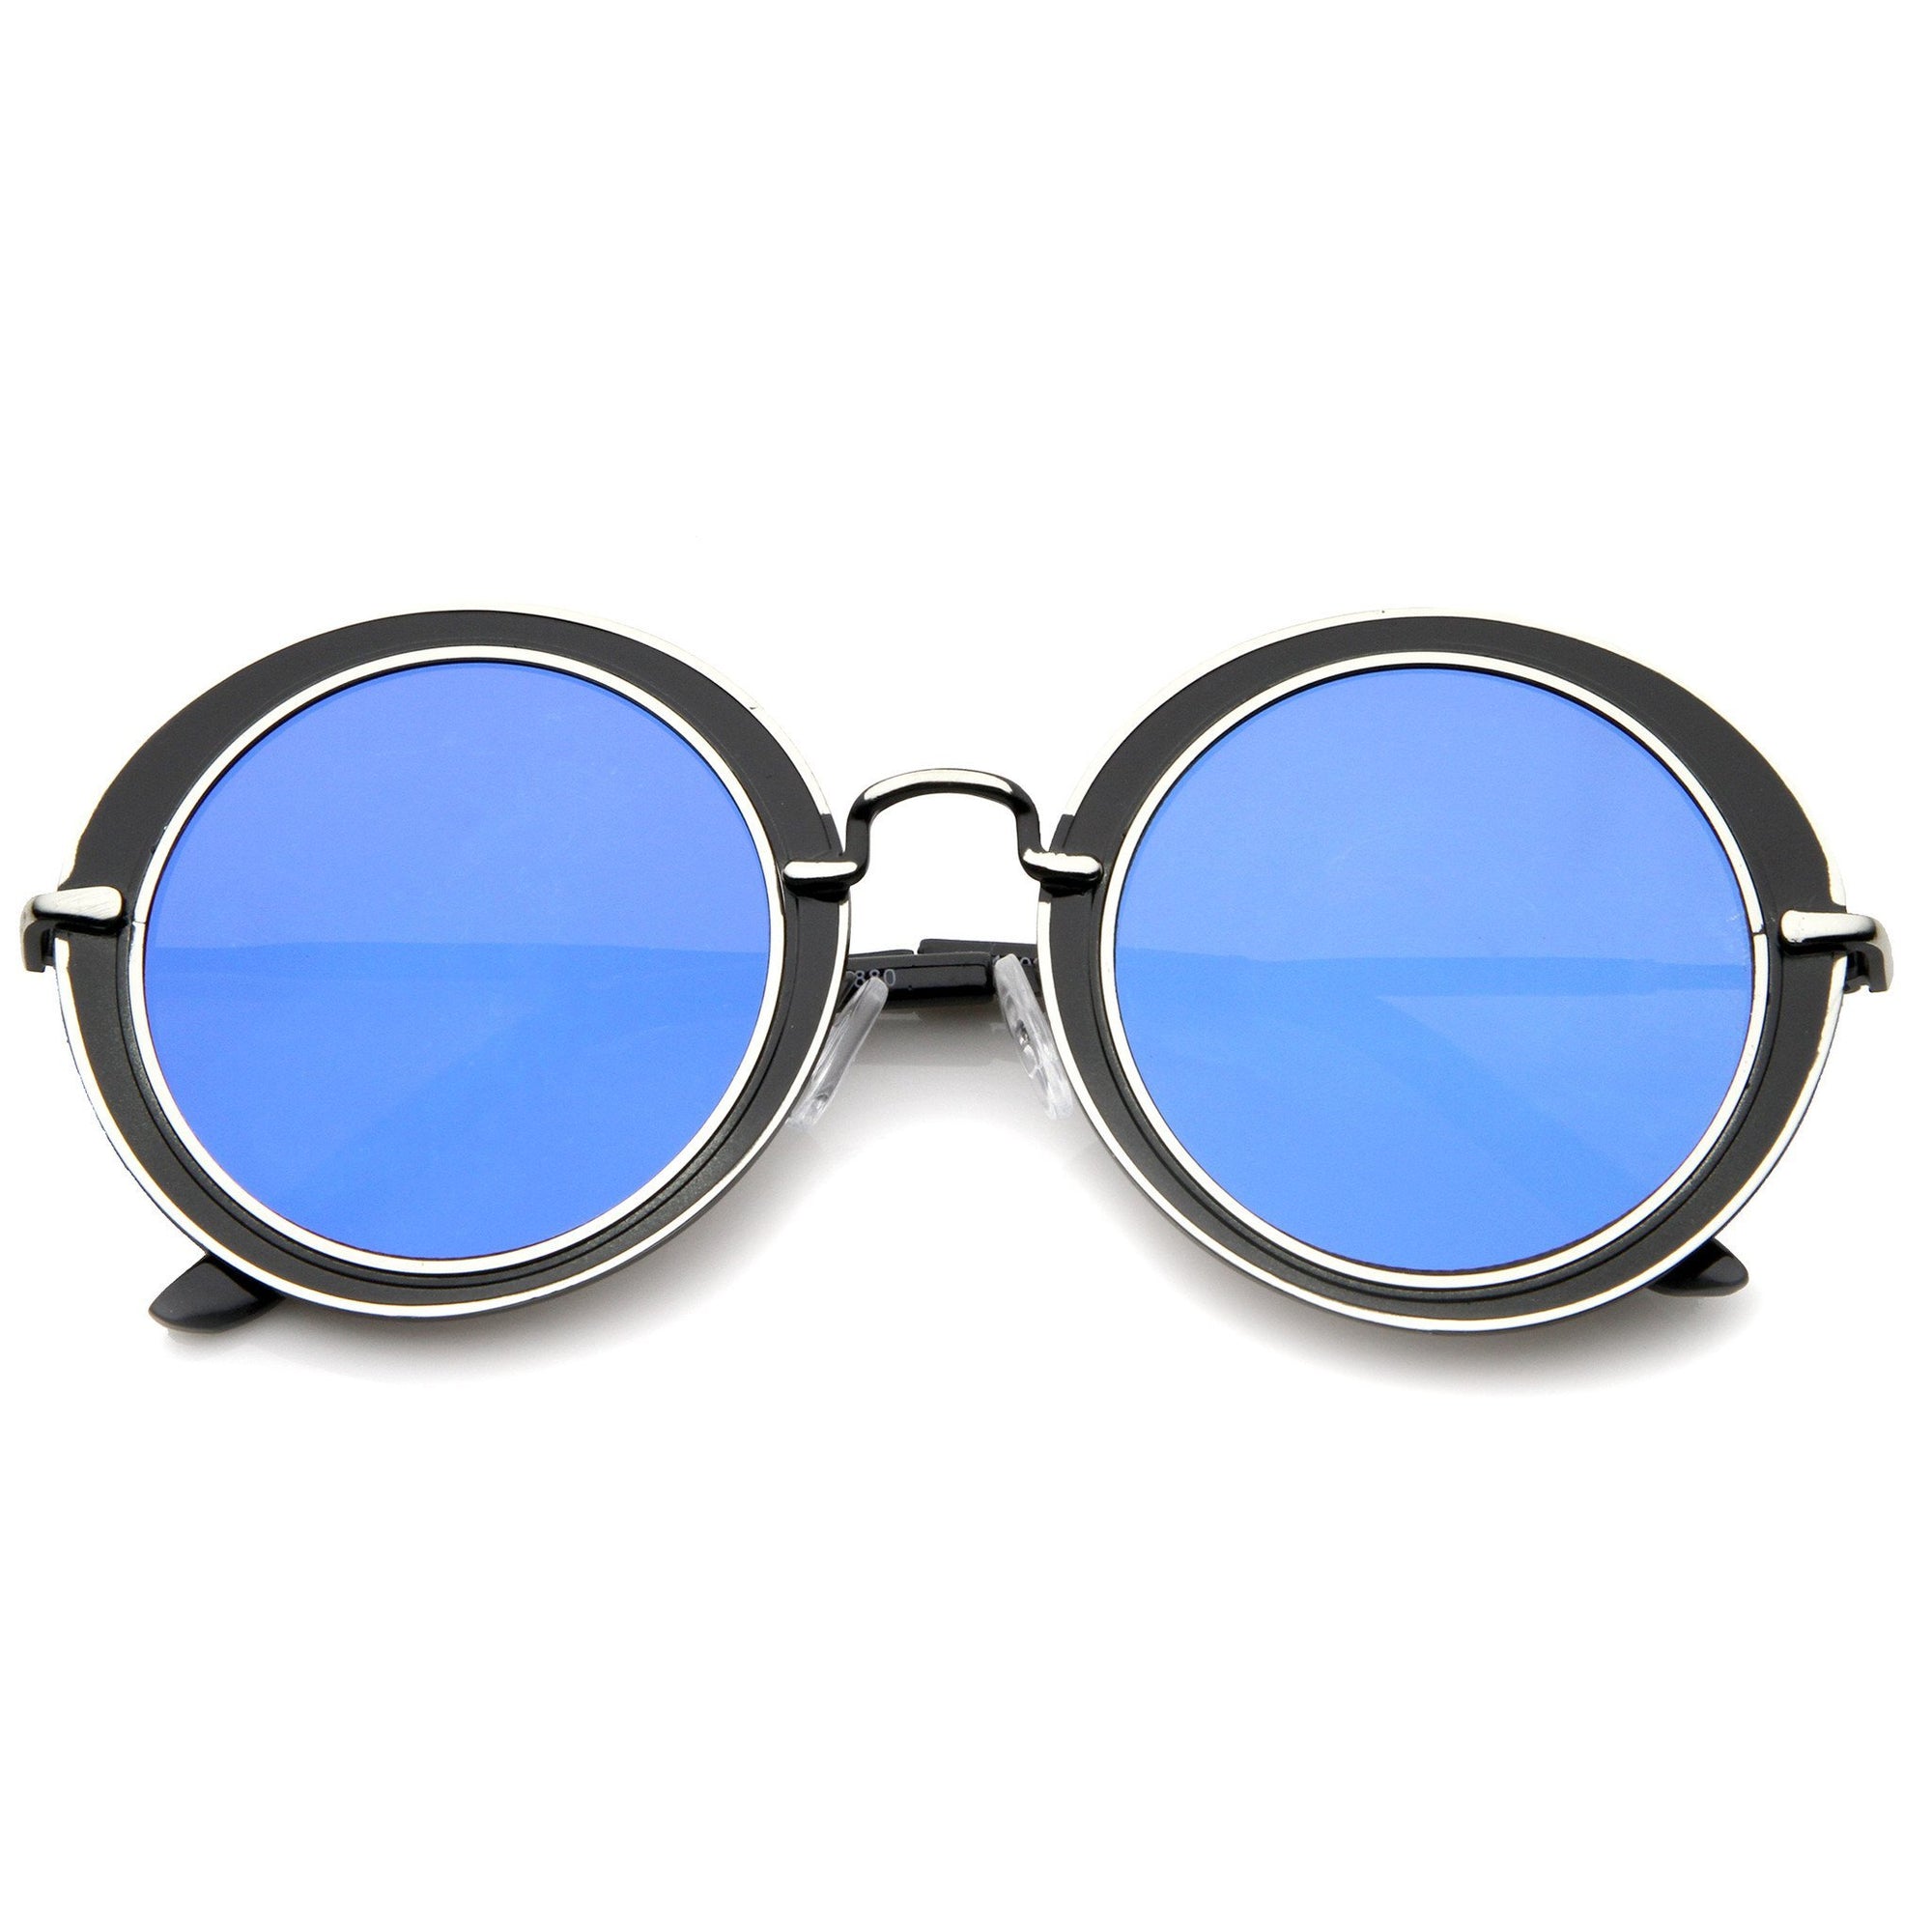 Gafas de sol retro modernas con lentes planas y contorno ovalado A484